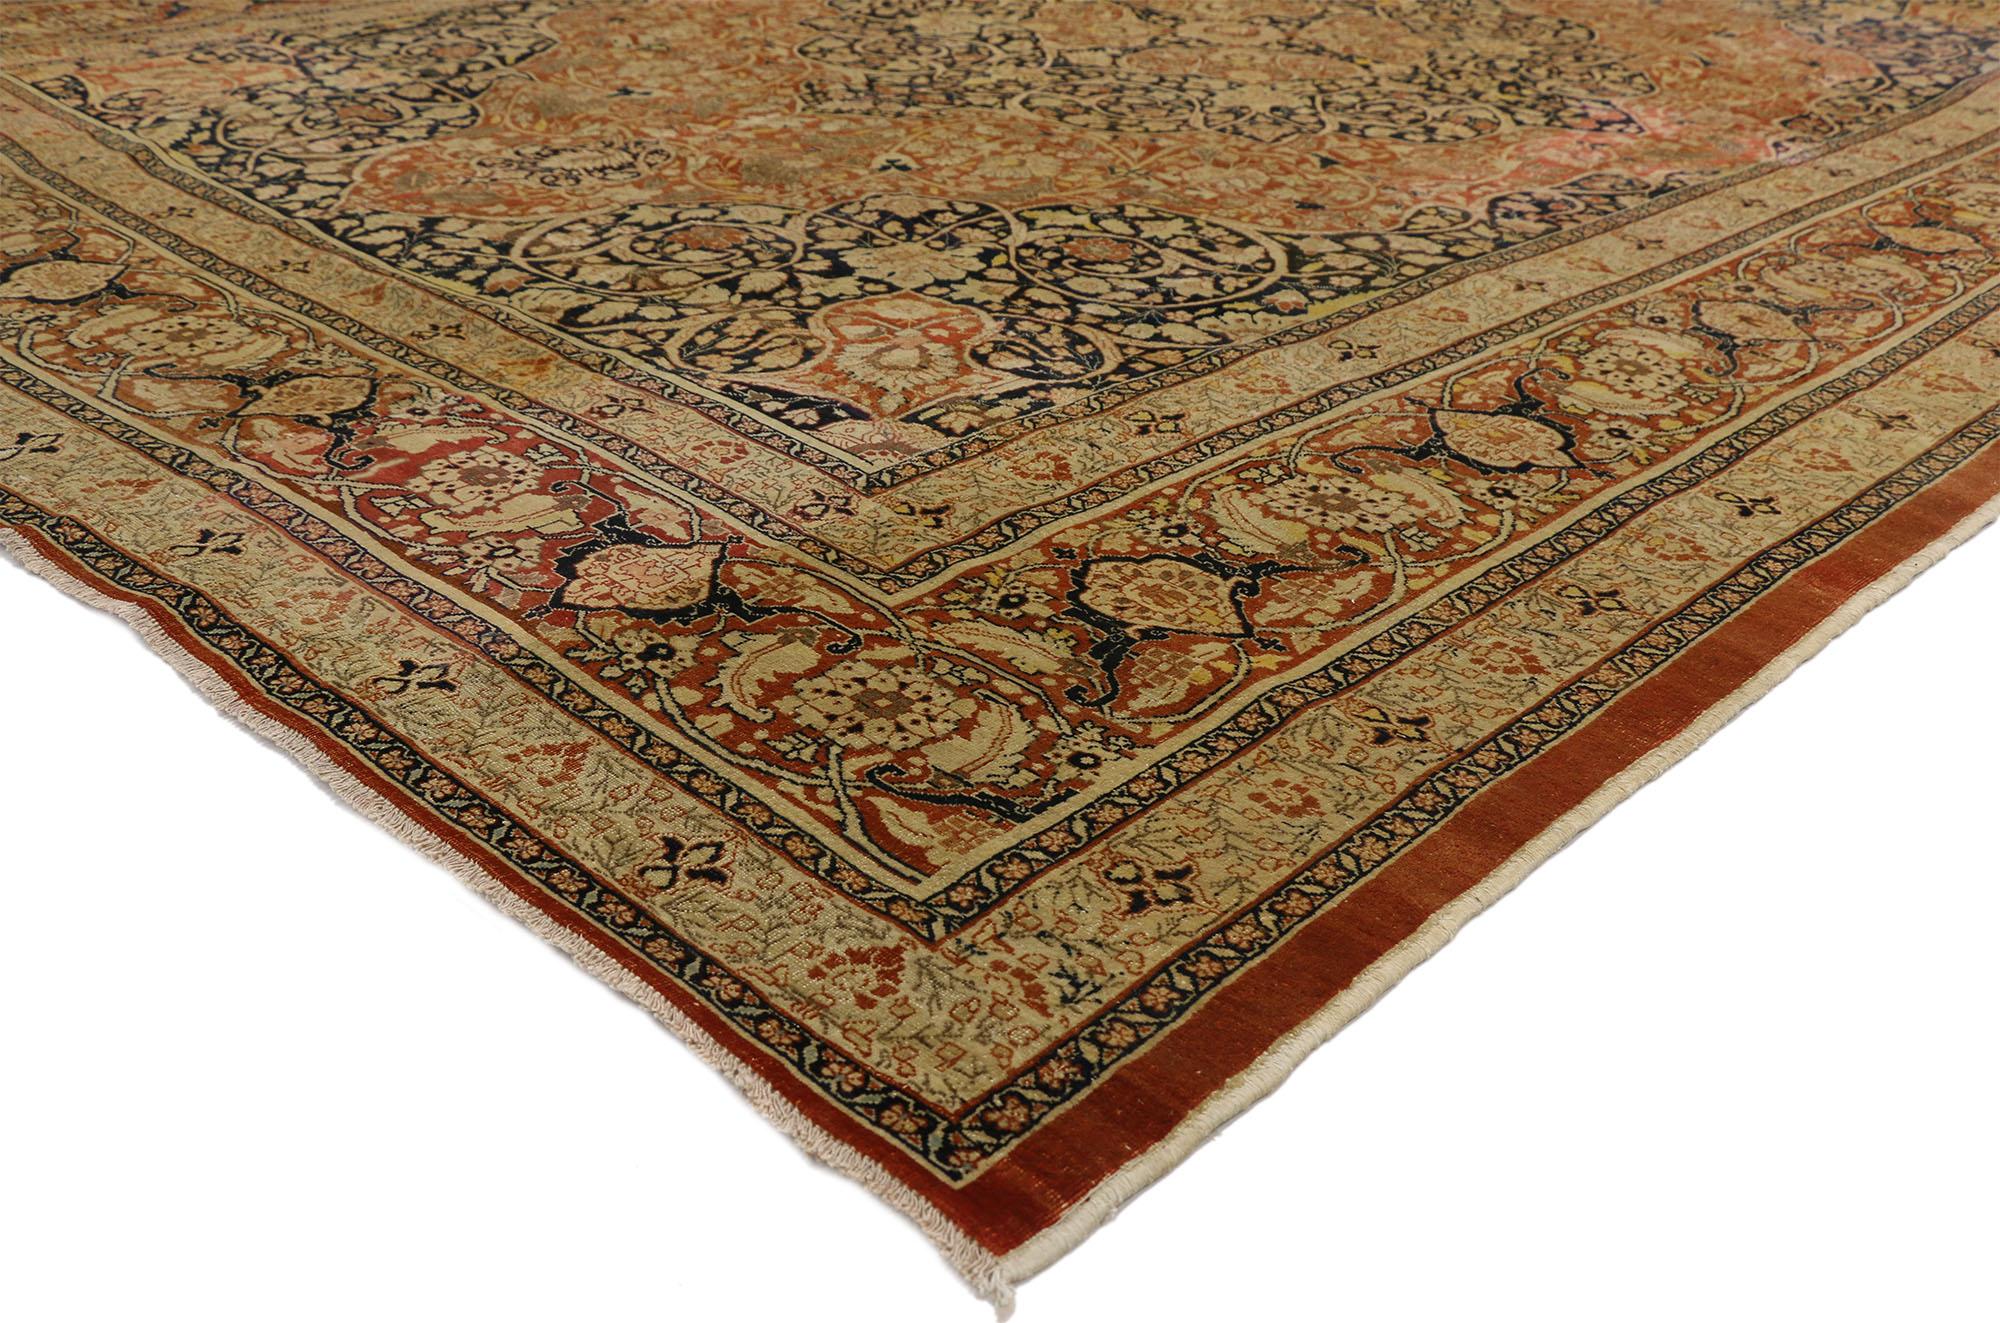 73130 Haji Jalili antiker persischer Täbris-Teppich im Jugendstil. Dieser majestätische und klassisch komponierte Haji Jalili Antique Persian Tabriz Rug mit Art Nouveau Style wurde im Iran im späten 19. Jahrhundert, um 1880, hergestellt. In der